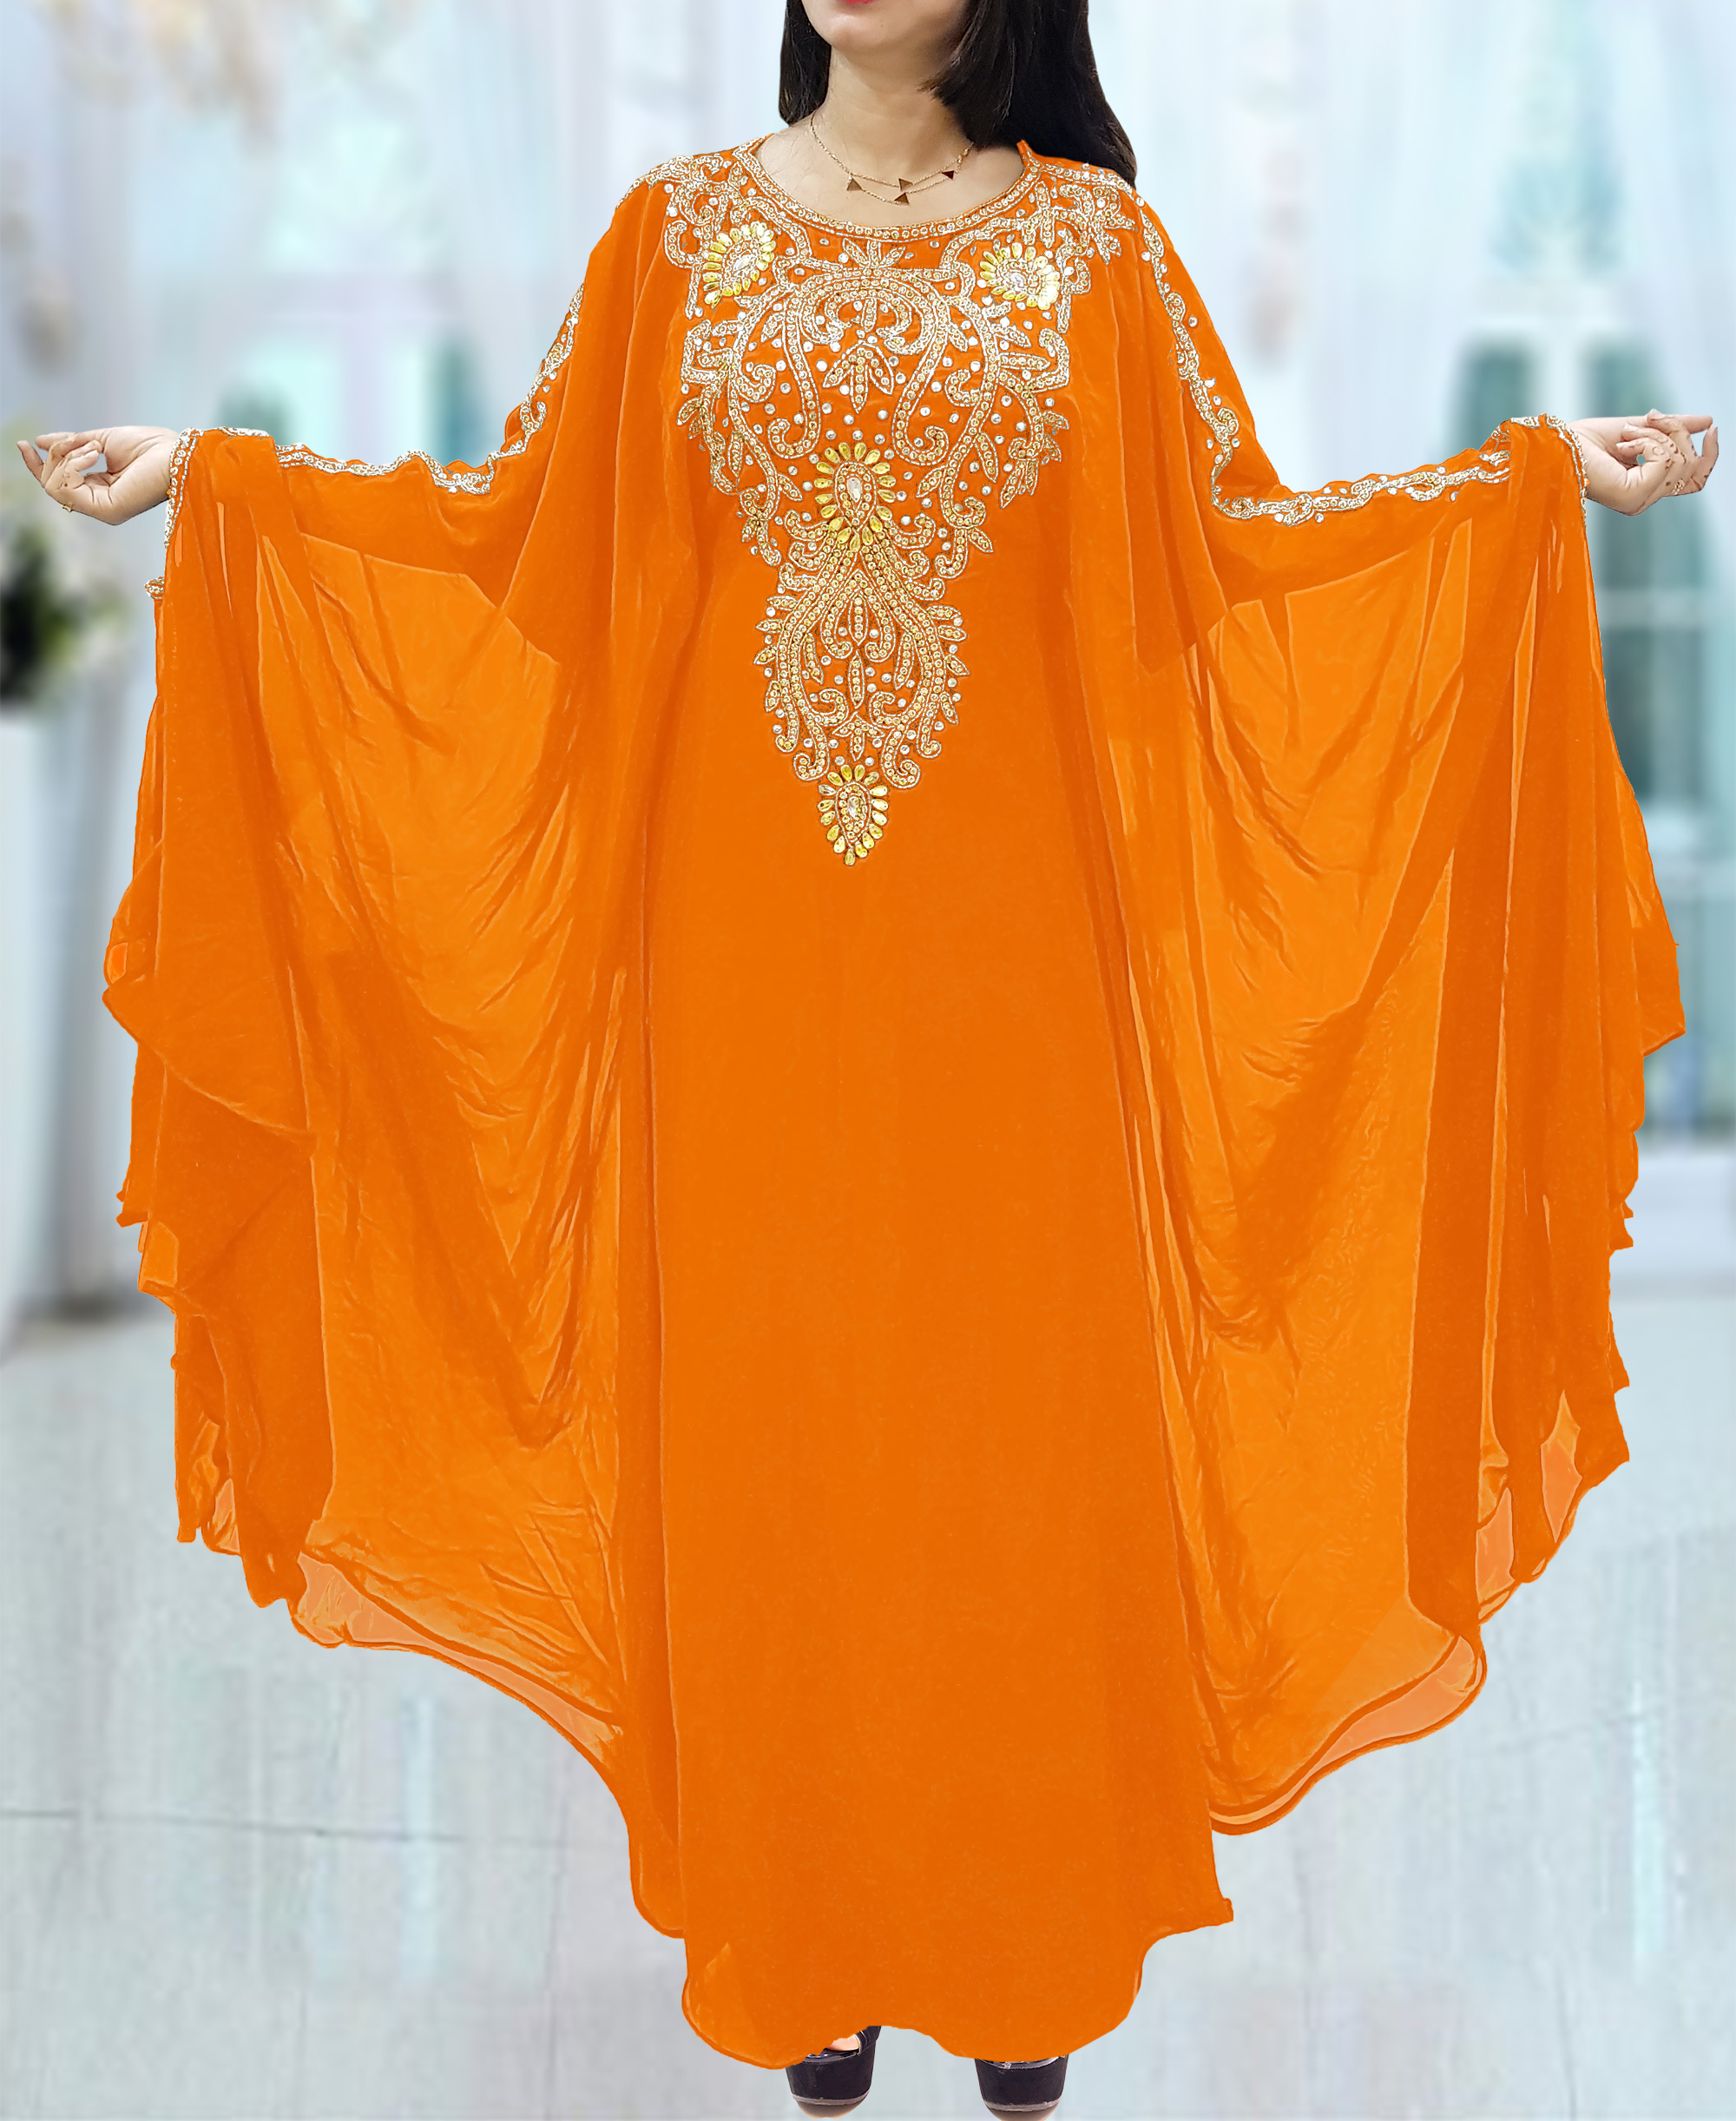 orange dress for girl